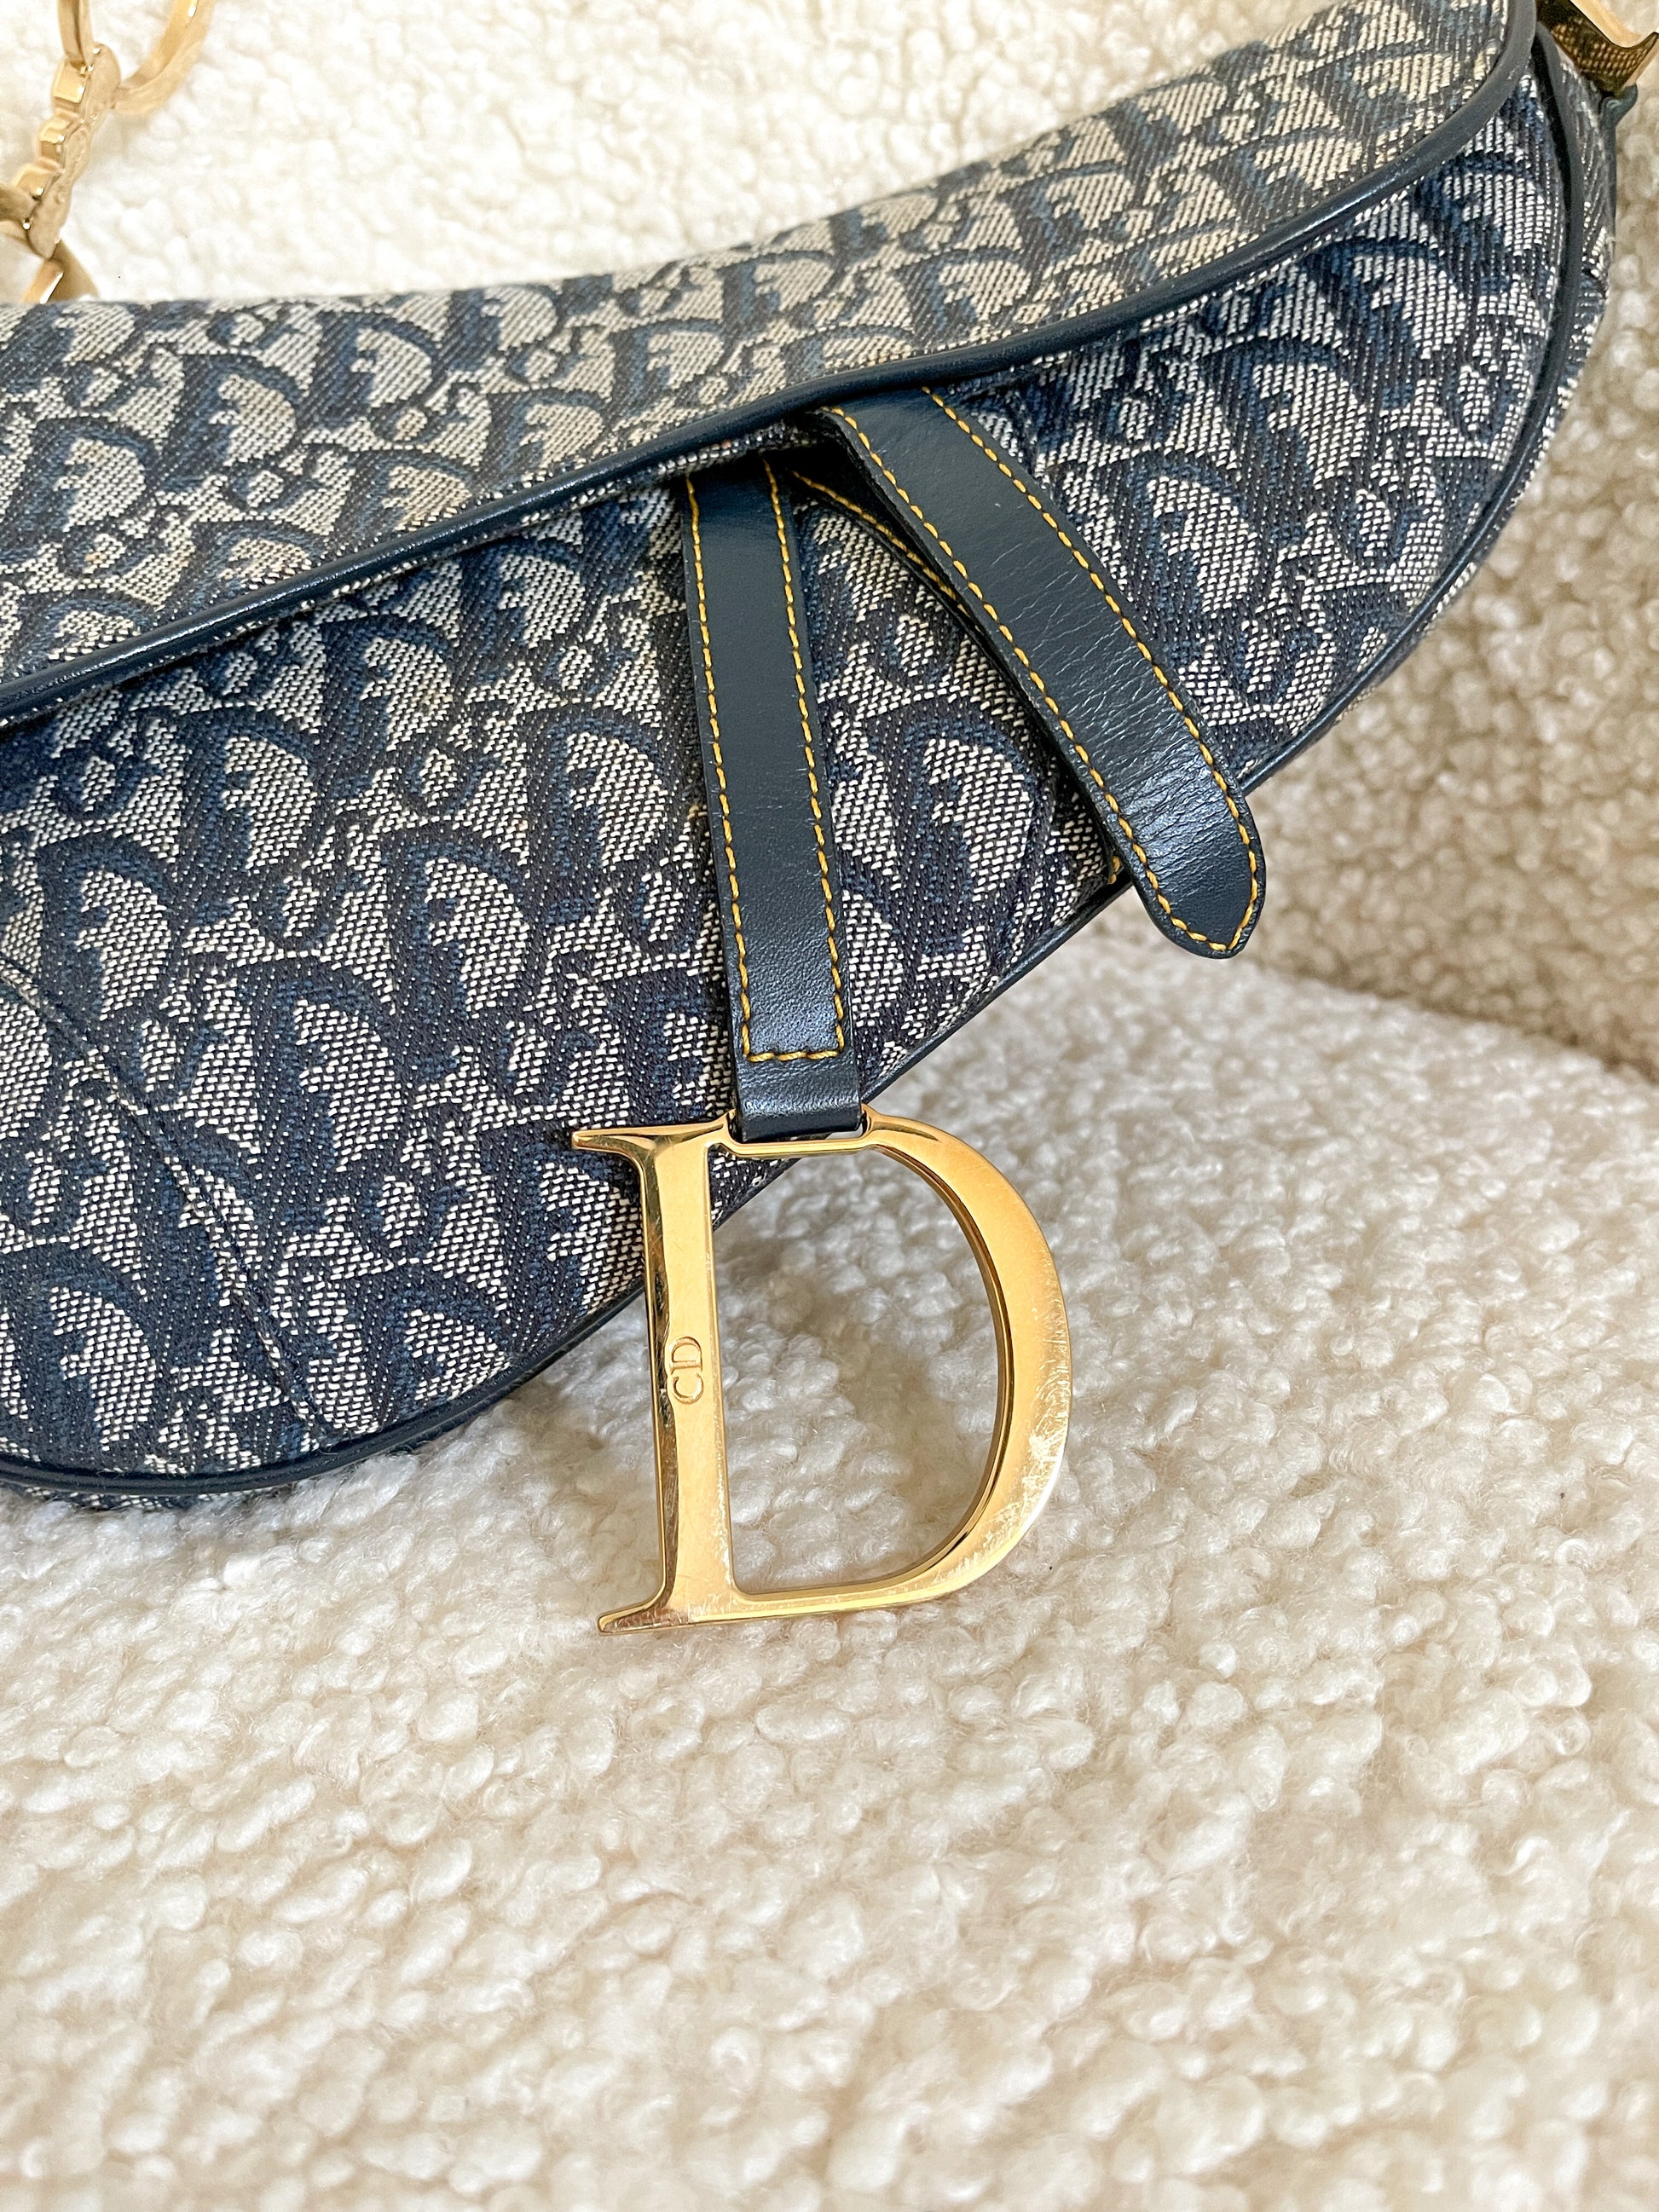 Pick your fave: Dior Pochette or Dior Saddle bag? 👀 #vintagedior  #preloveddior #dioroblique #diorpochette #etoileluxuryvintage⠀